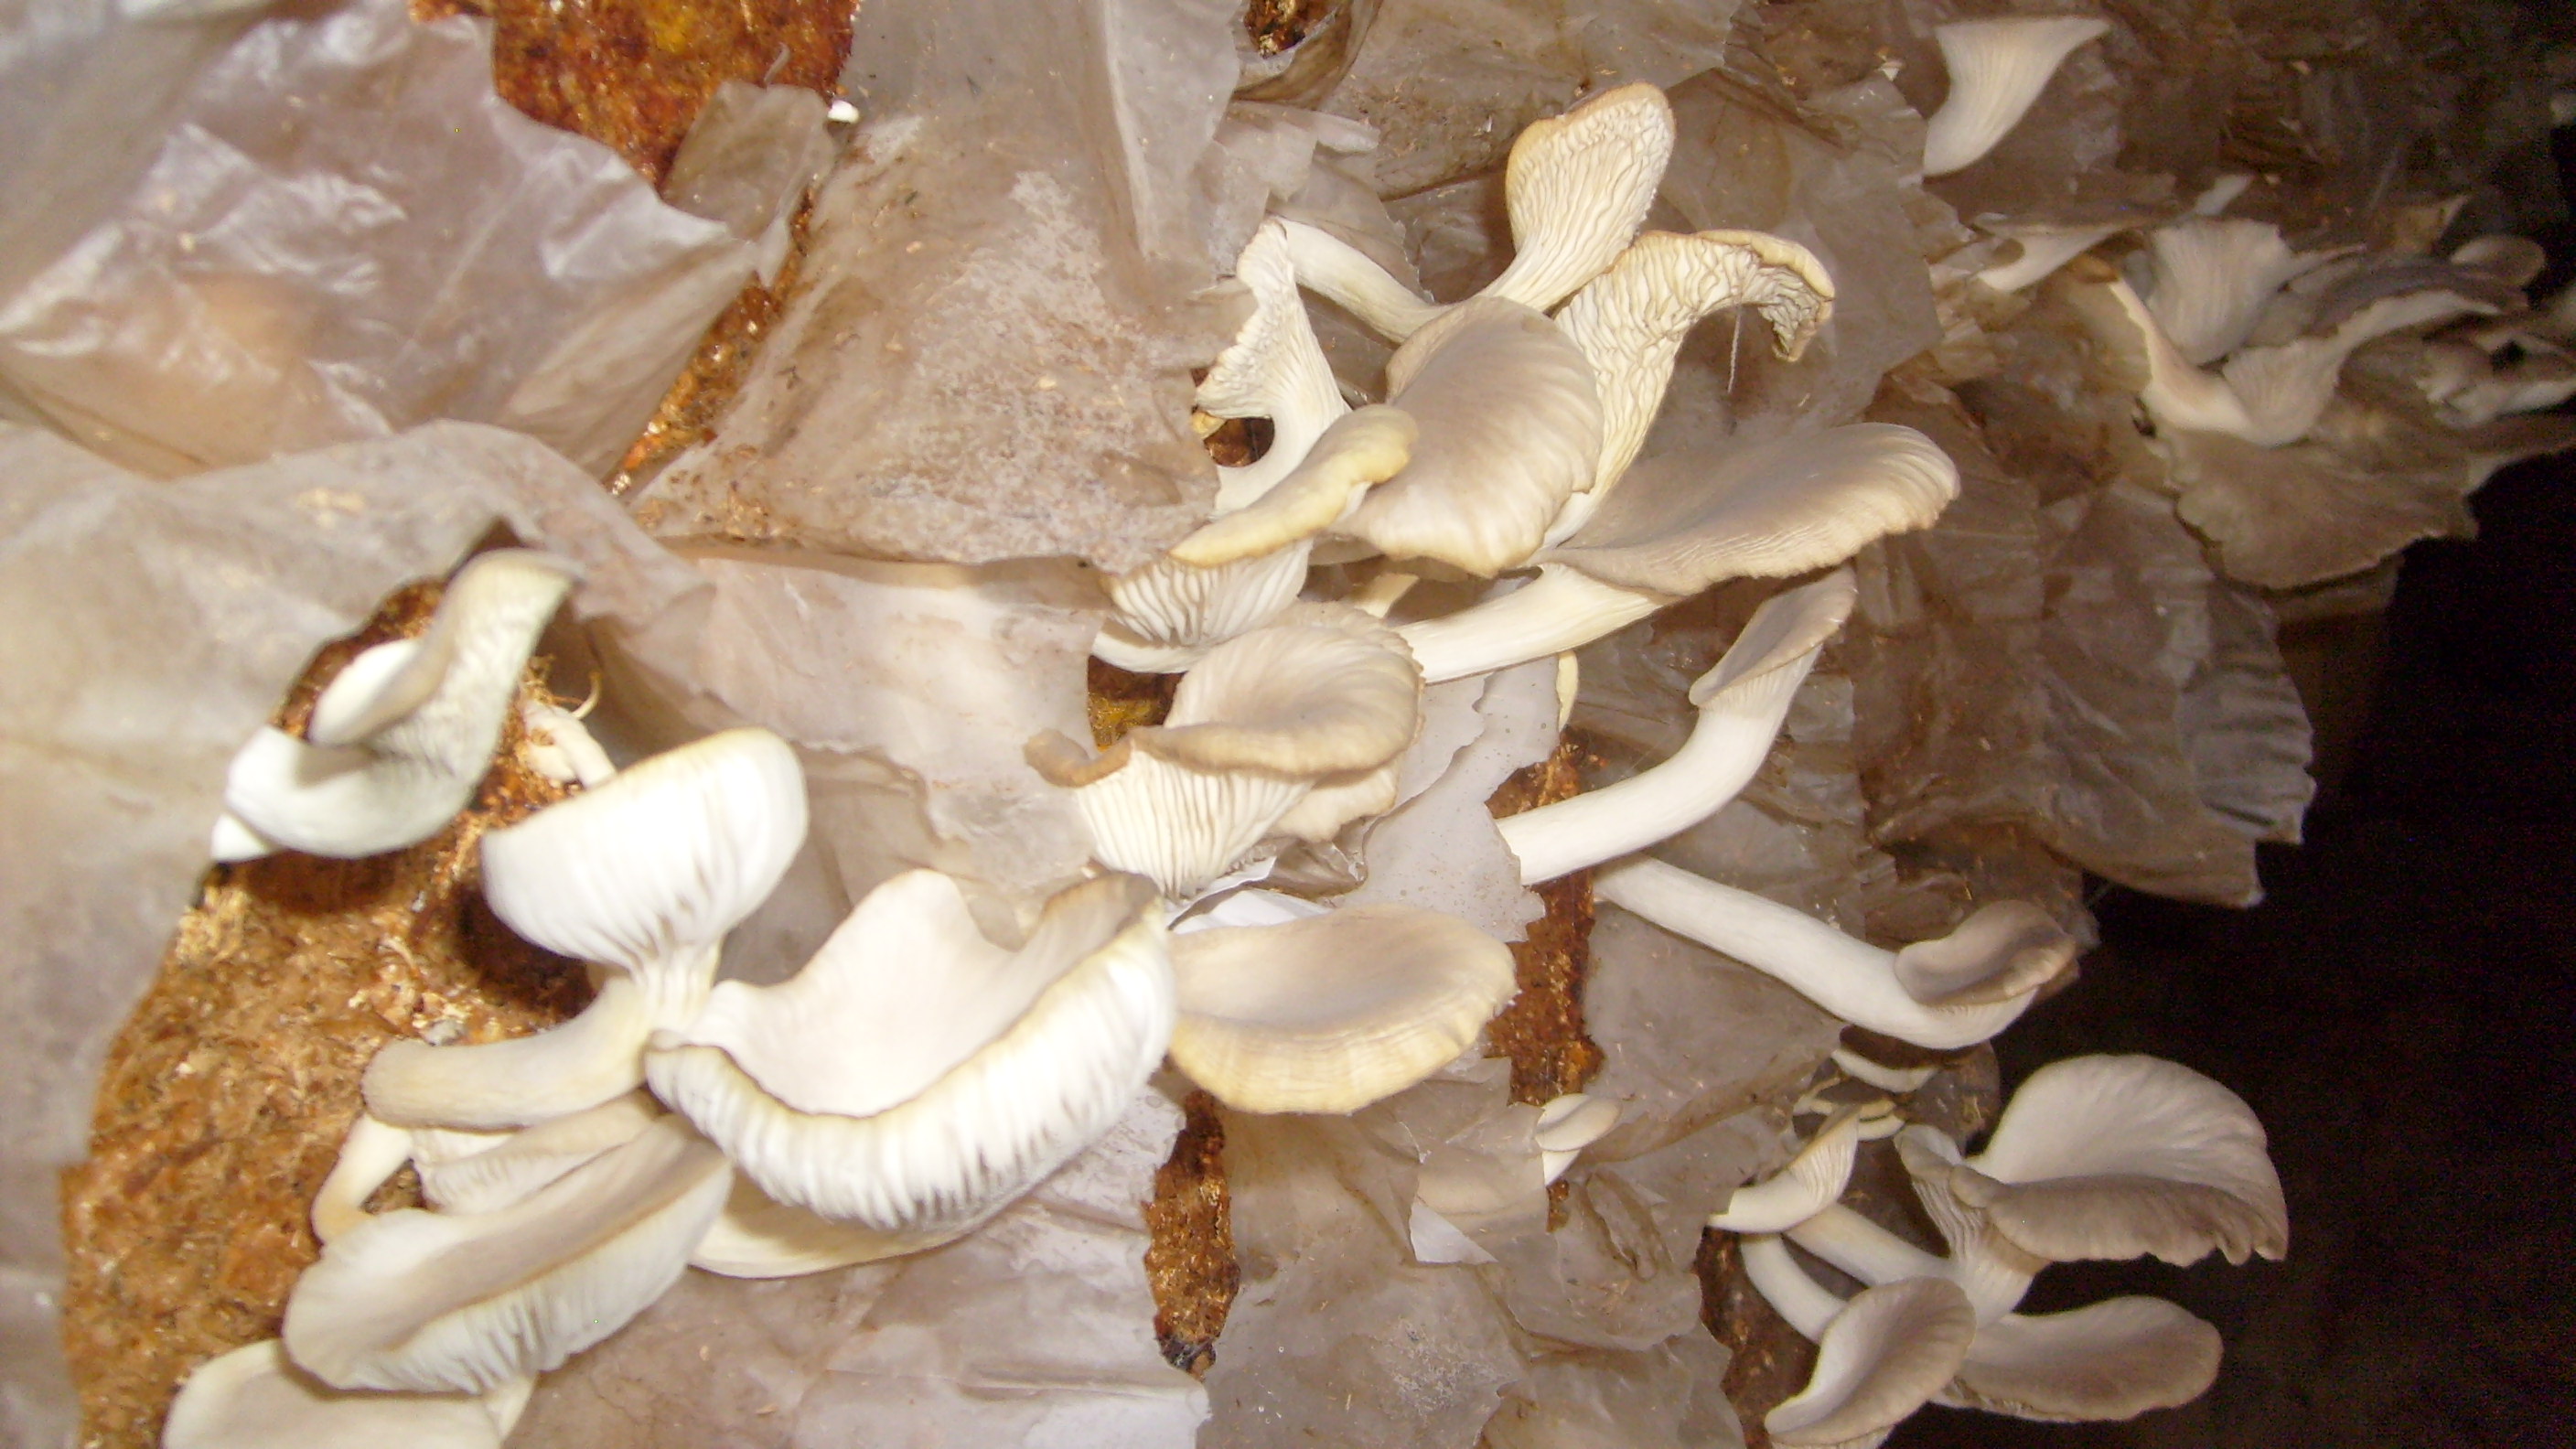 Oyster mushrooms growing in Ghana